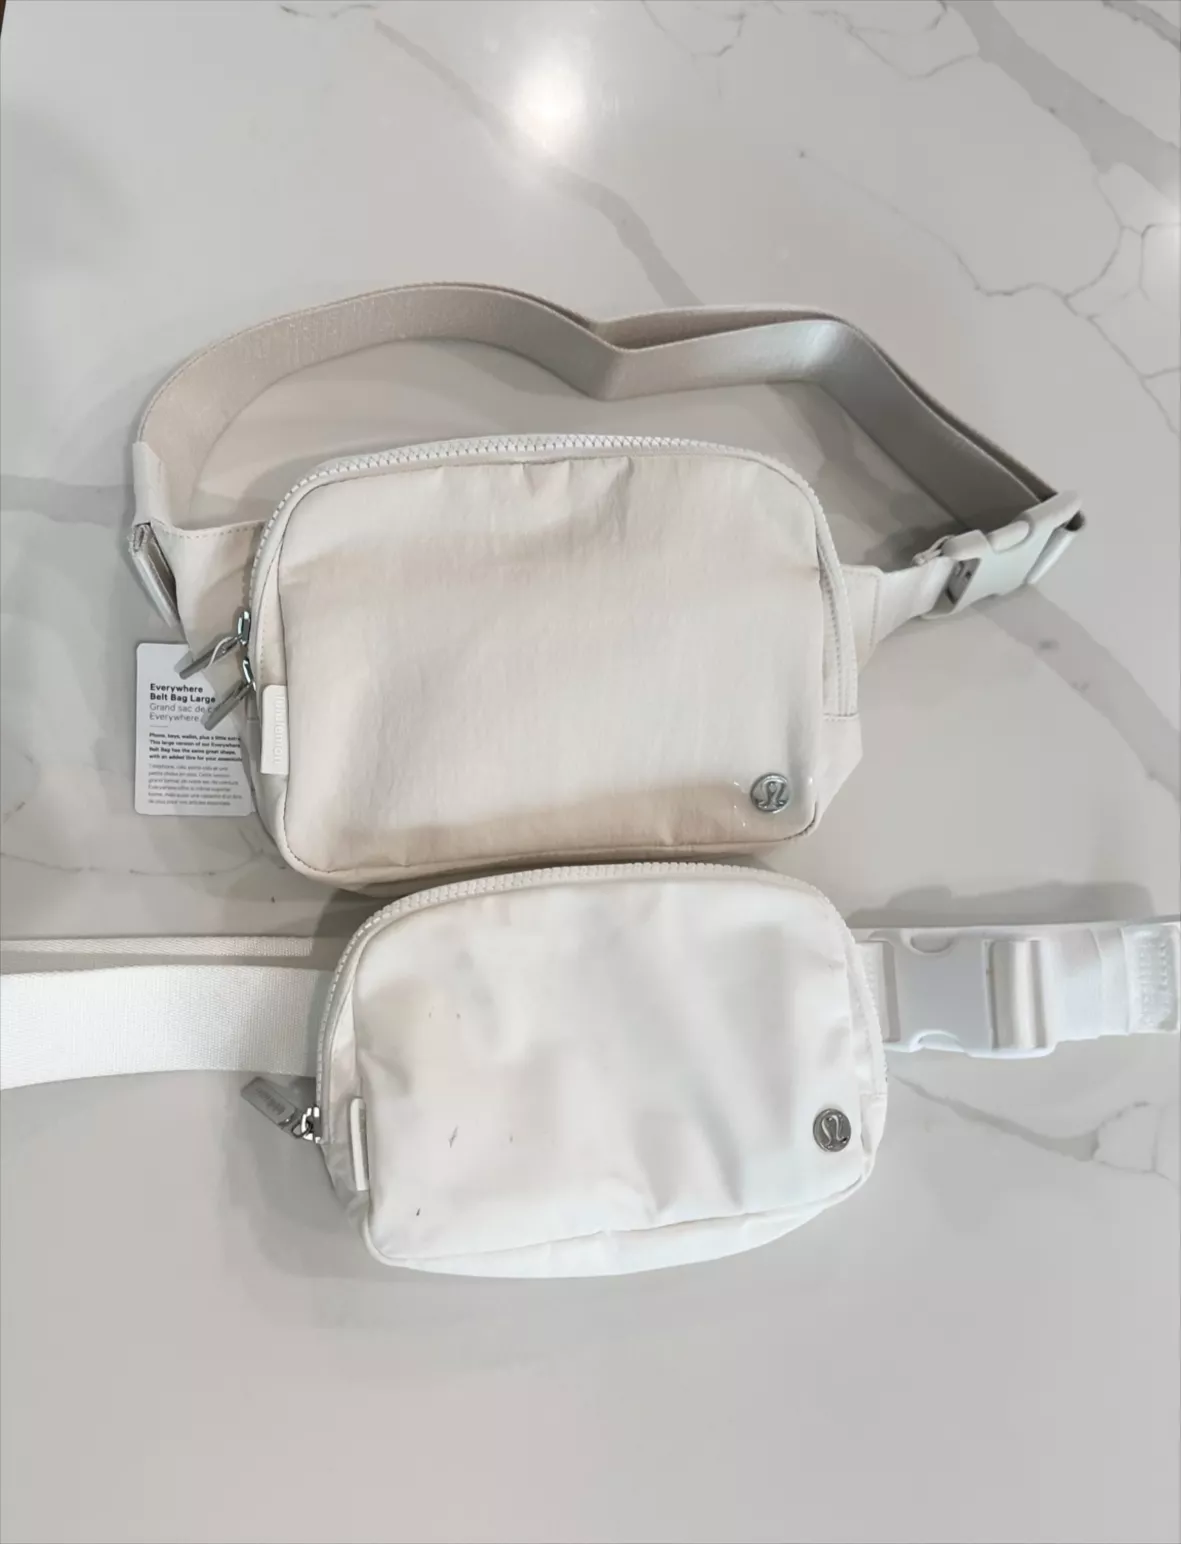 Lululemon White Everywhere Belt Bag 1L - Women's handbags